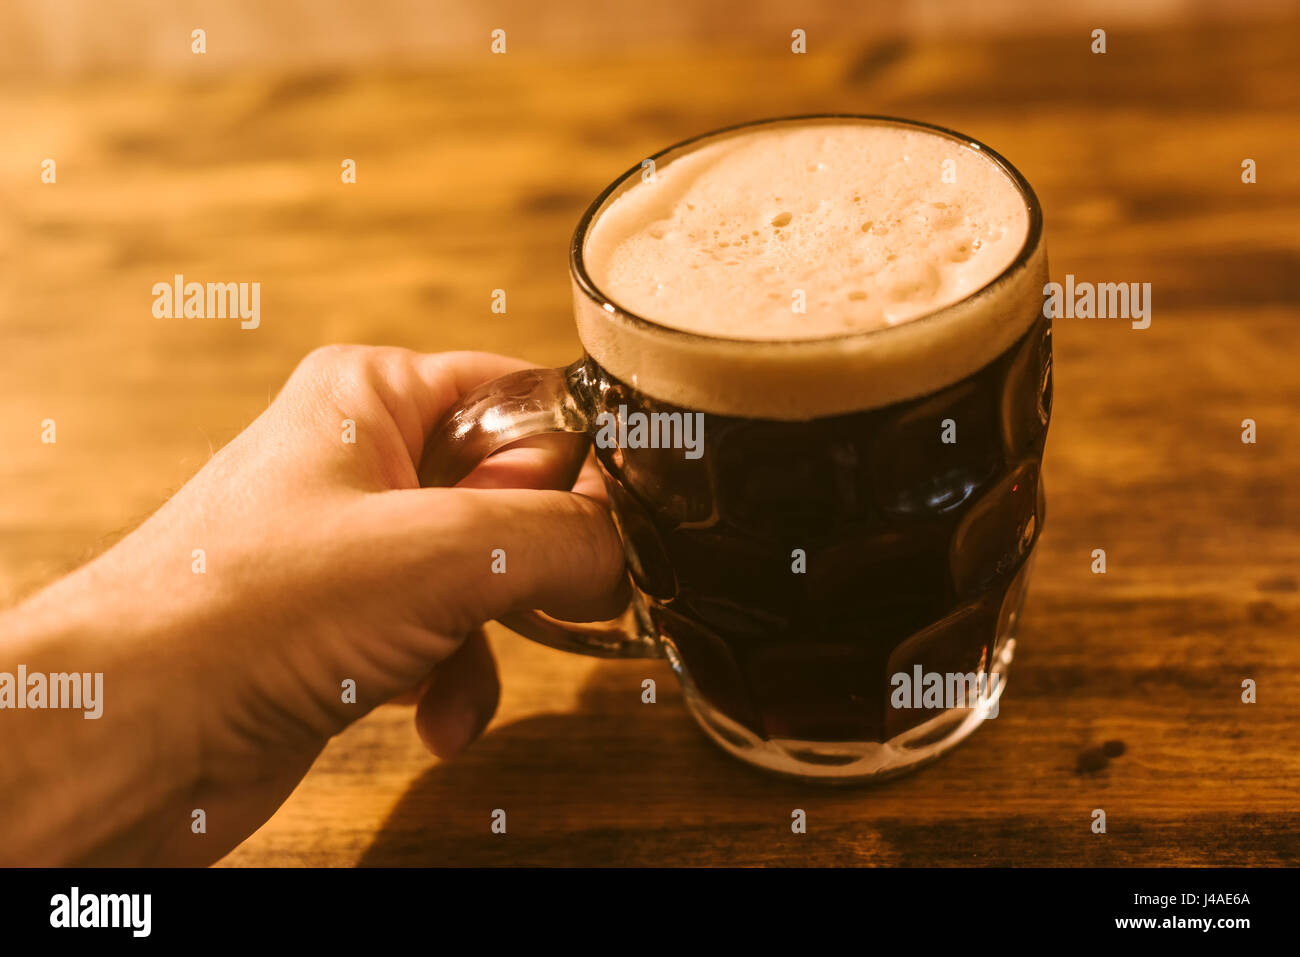 Menschen trinken dunkles Bier im britischen Grübchen Glaskrug Bier am Stehtisch Stockfoto